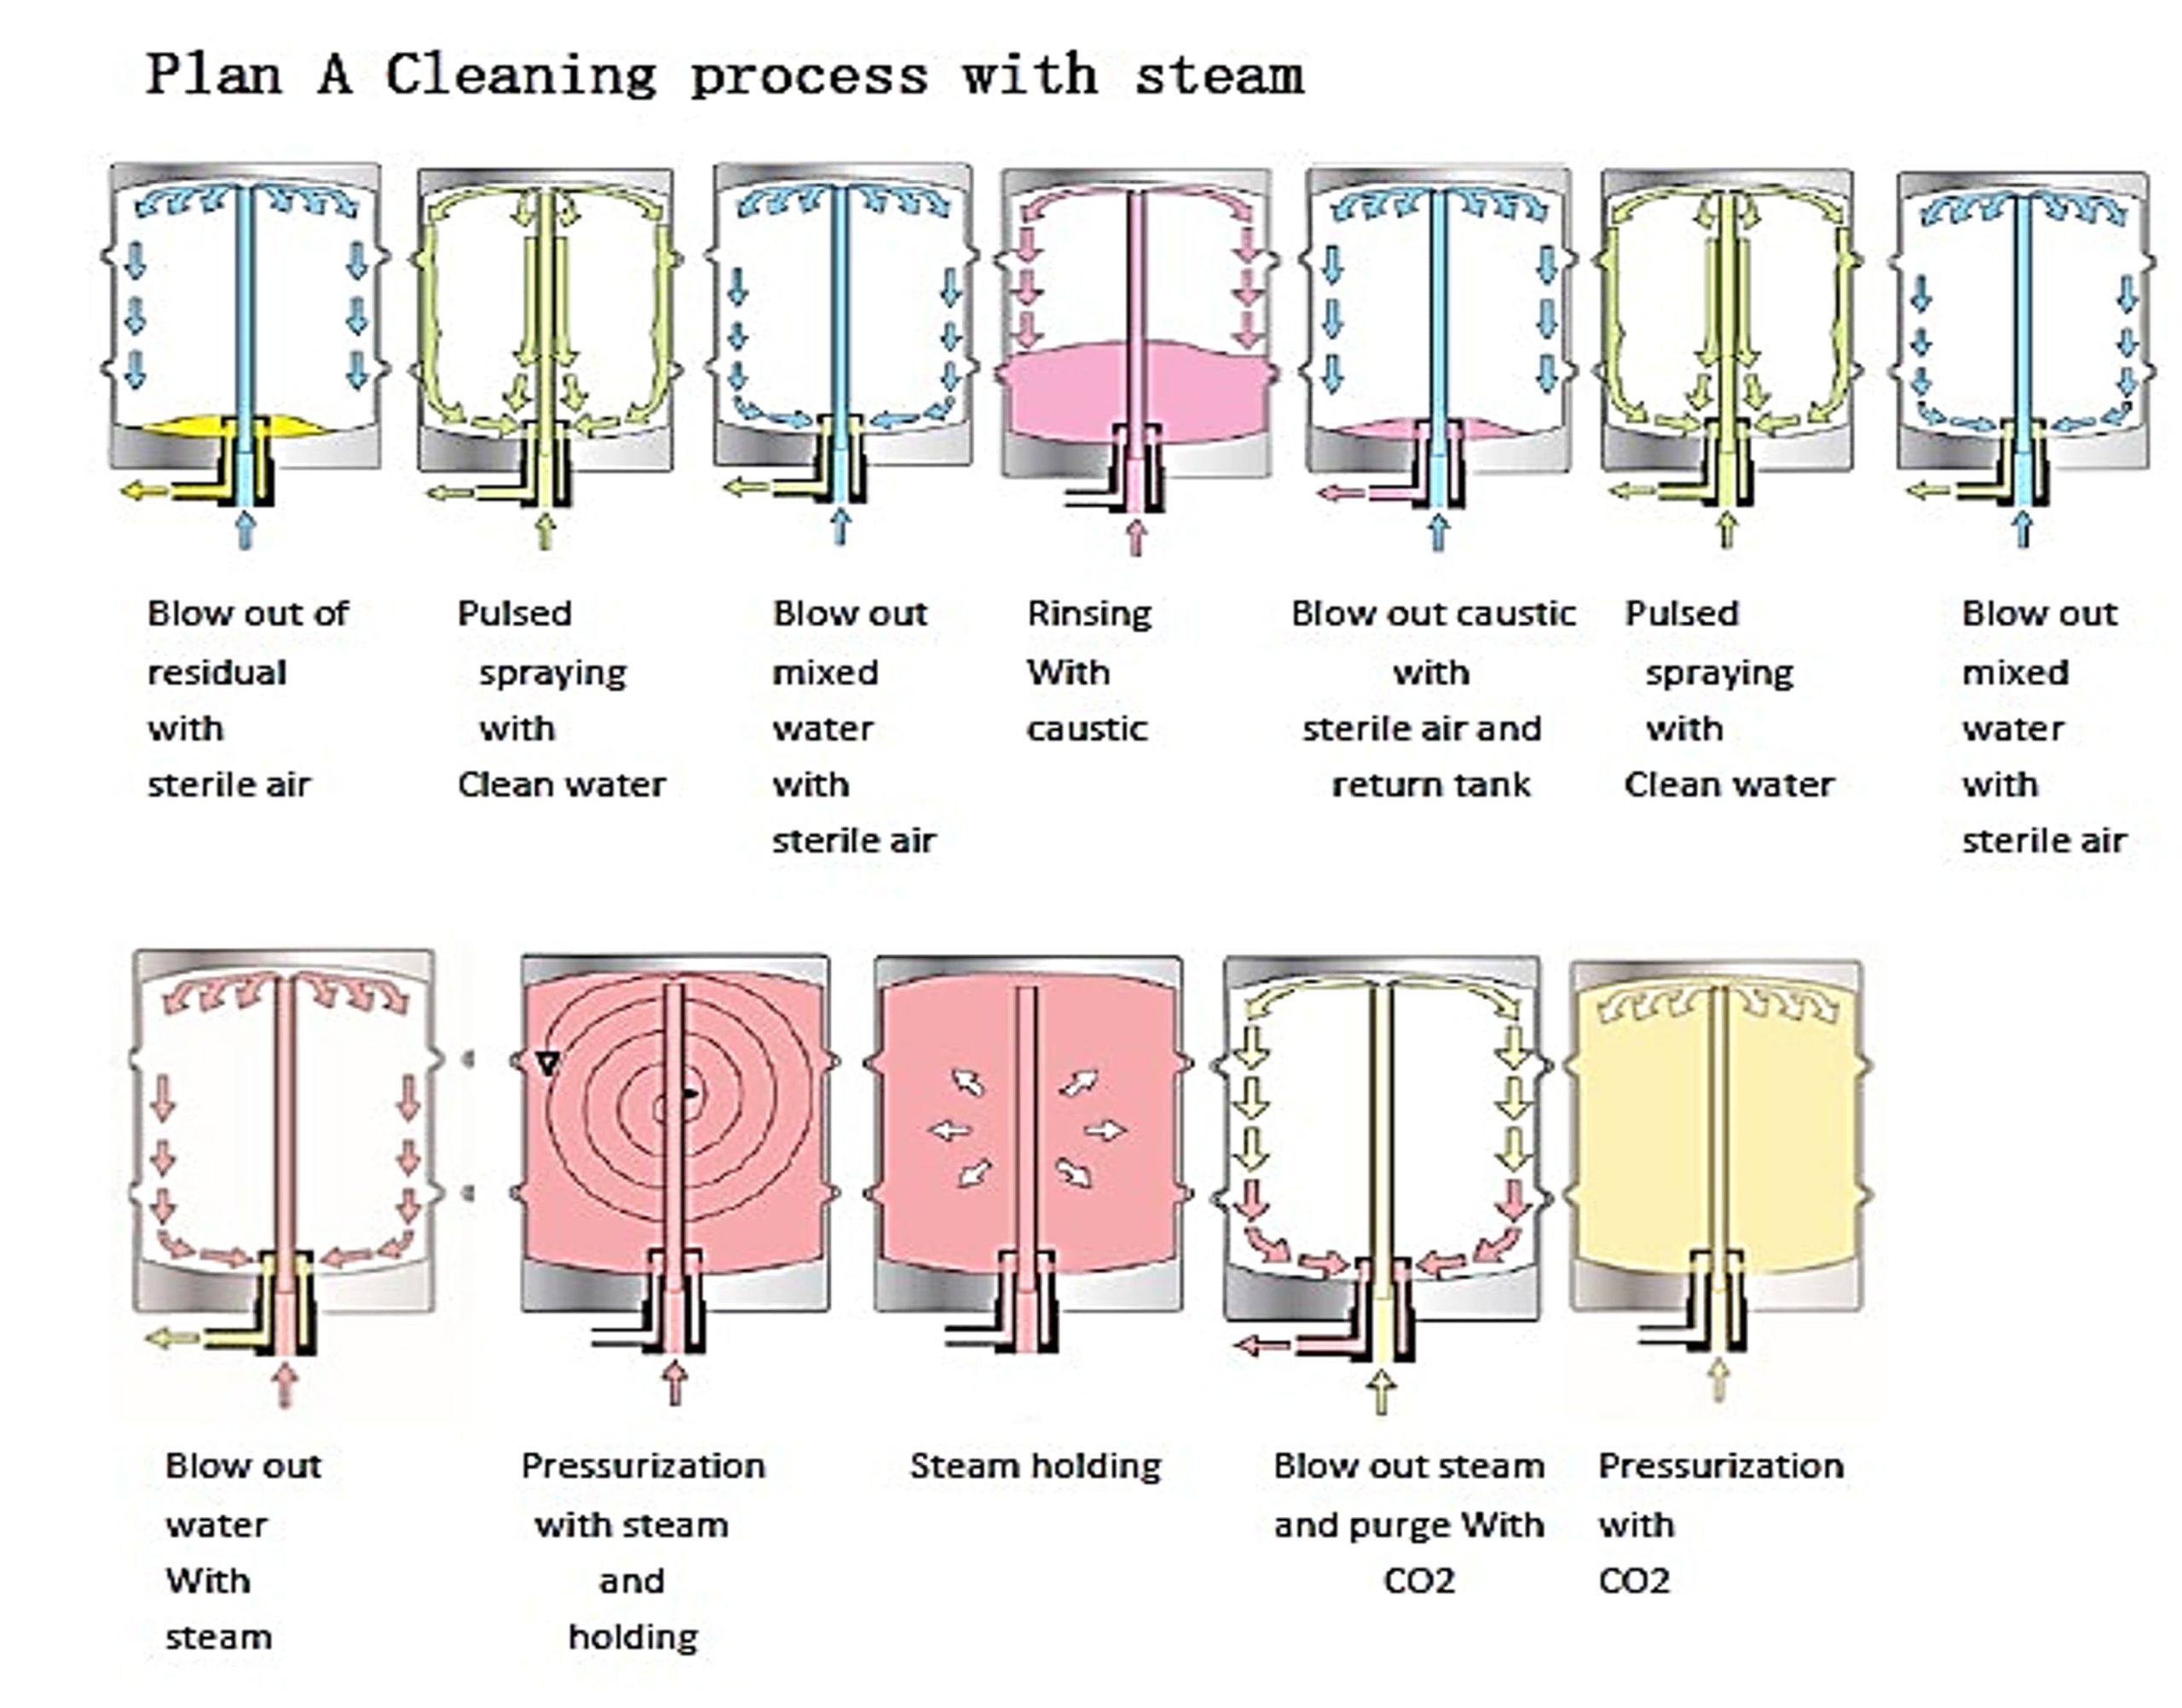 SKE-KW-Ⅱ | Planificar un proceso de limpieza con vapor